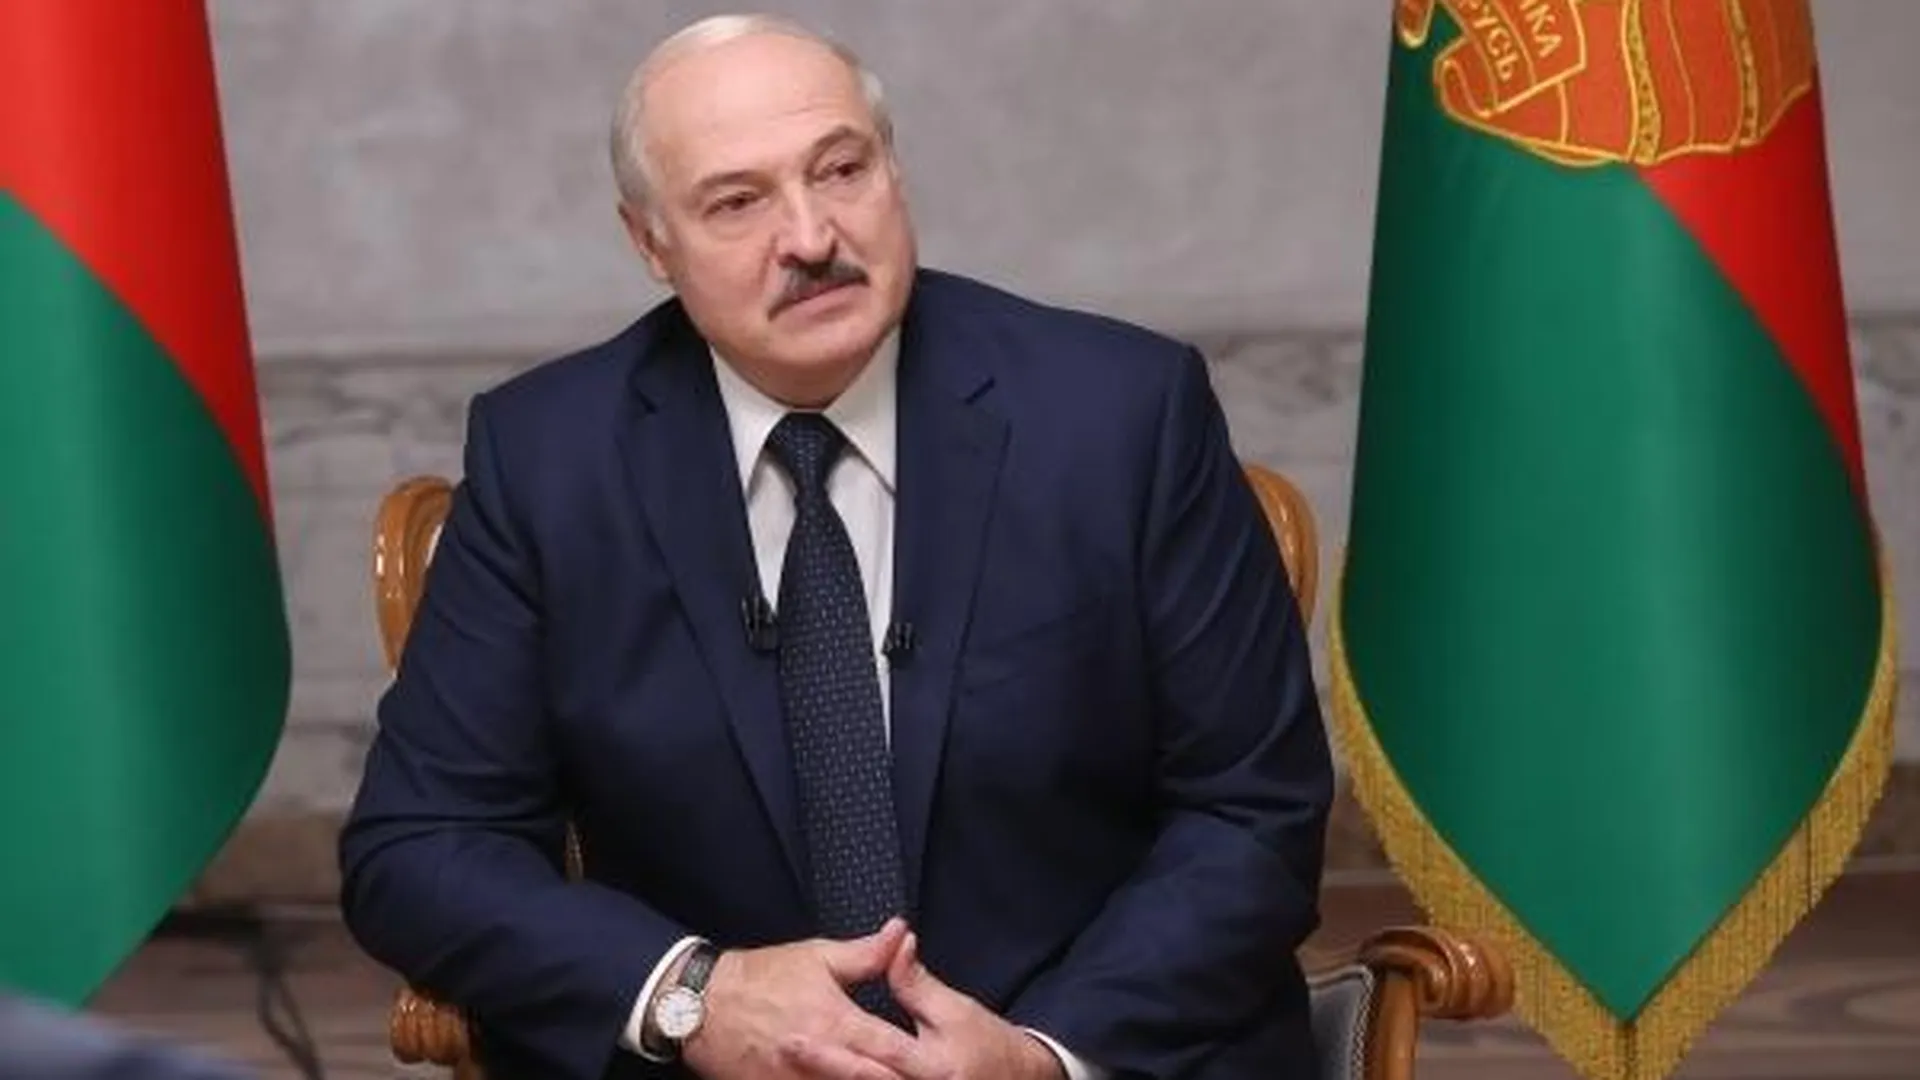 Пресс-служба президента Республики Беларусь